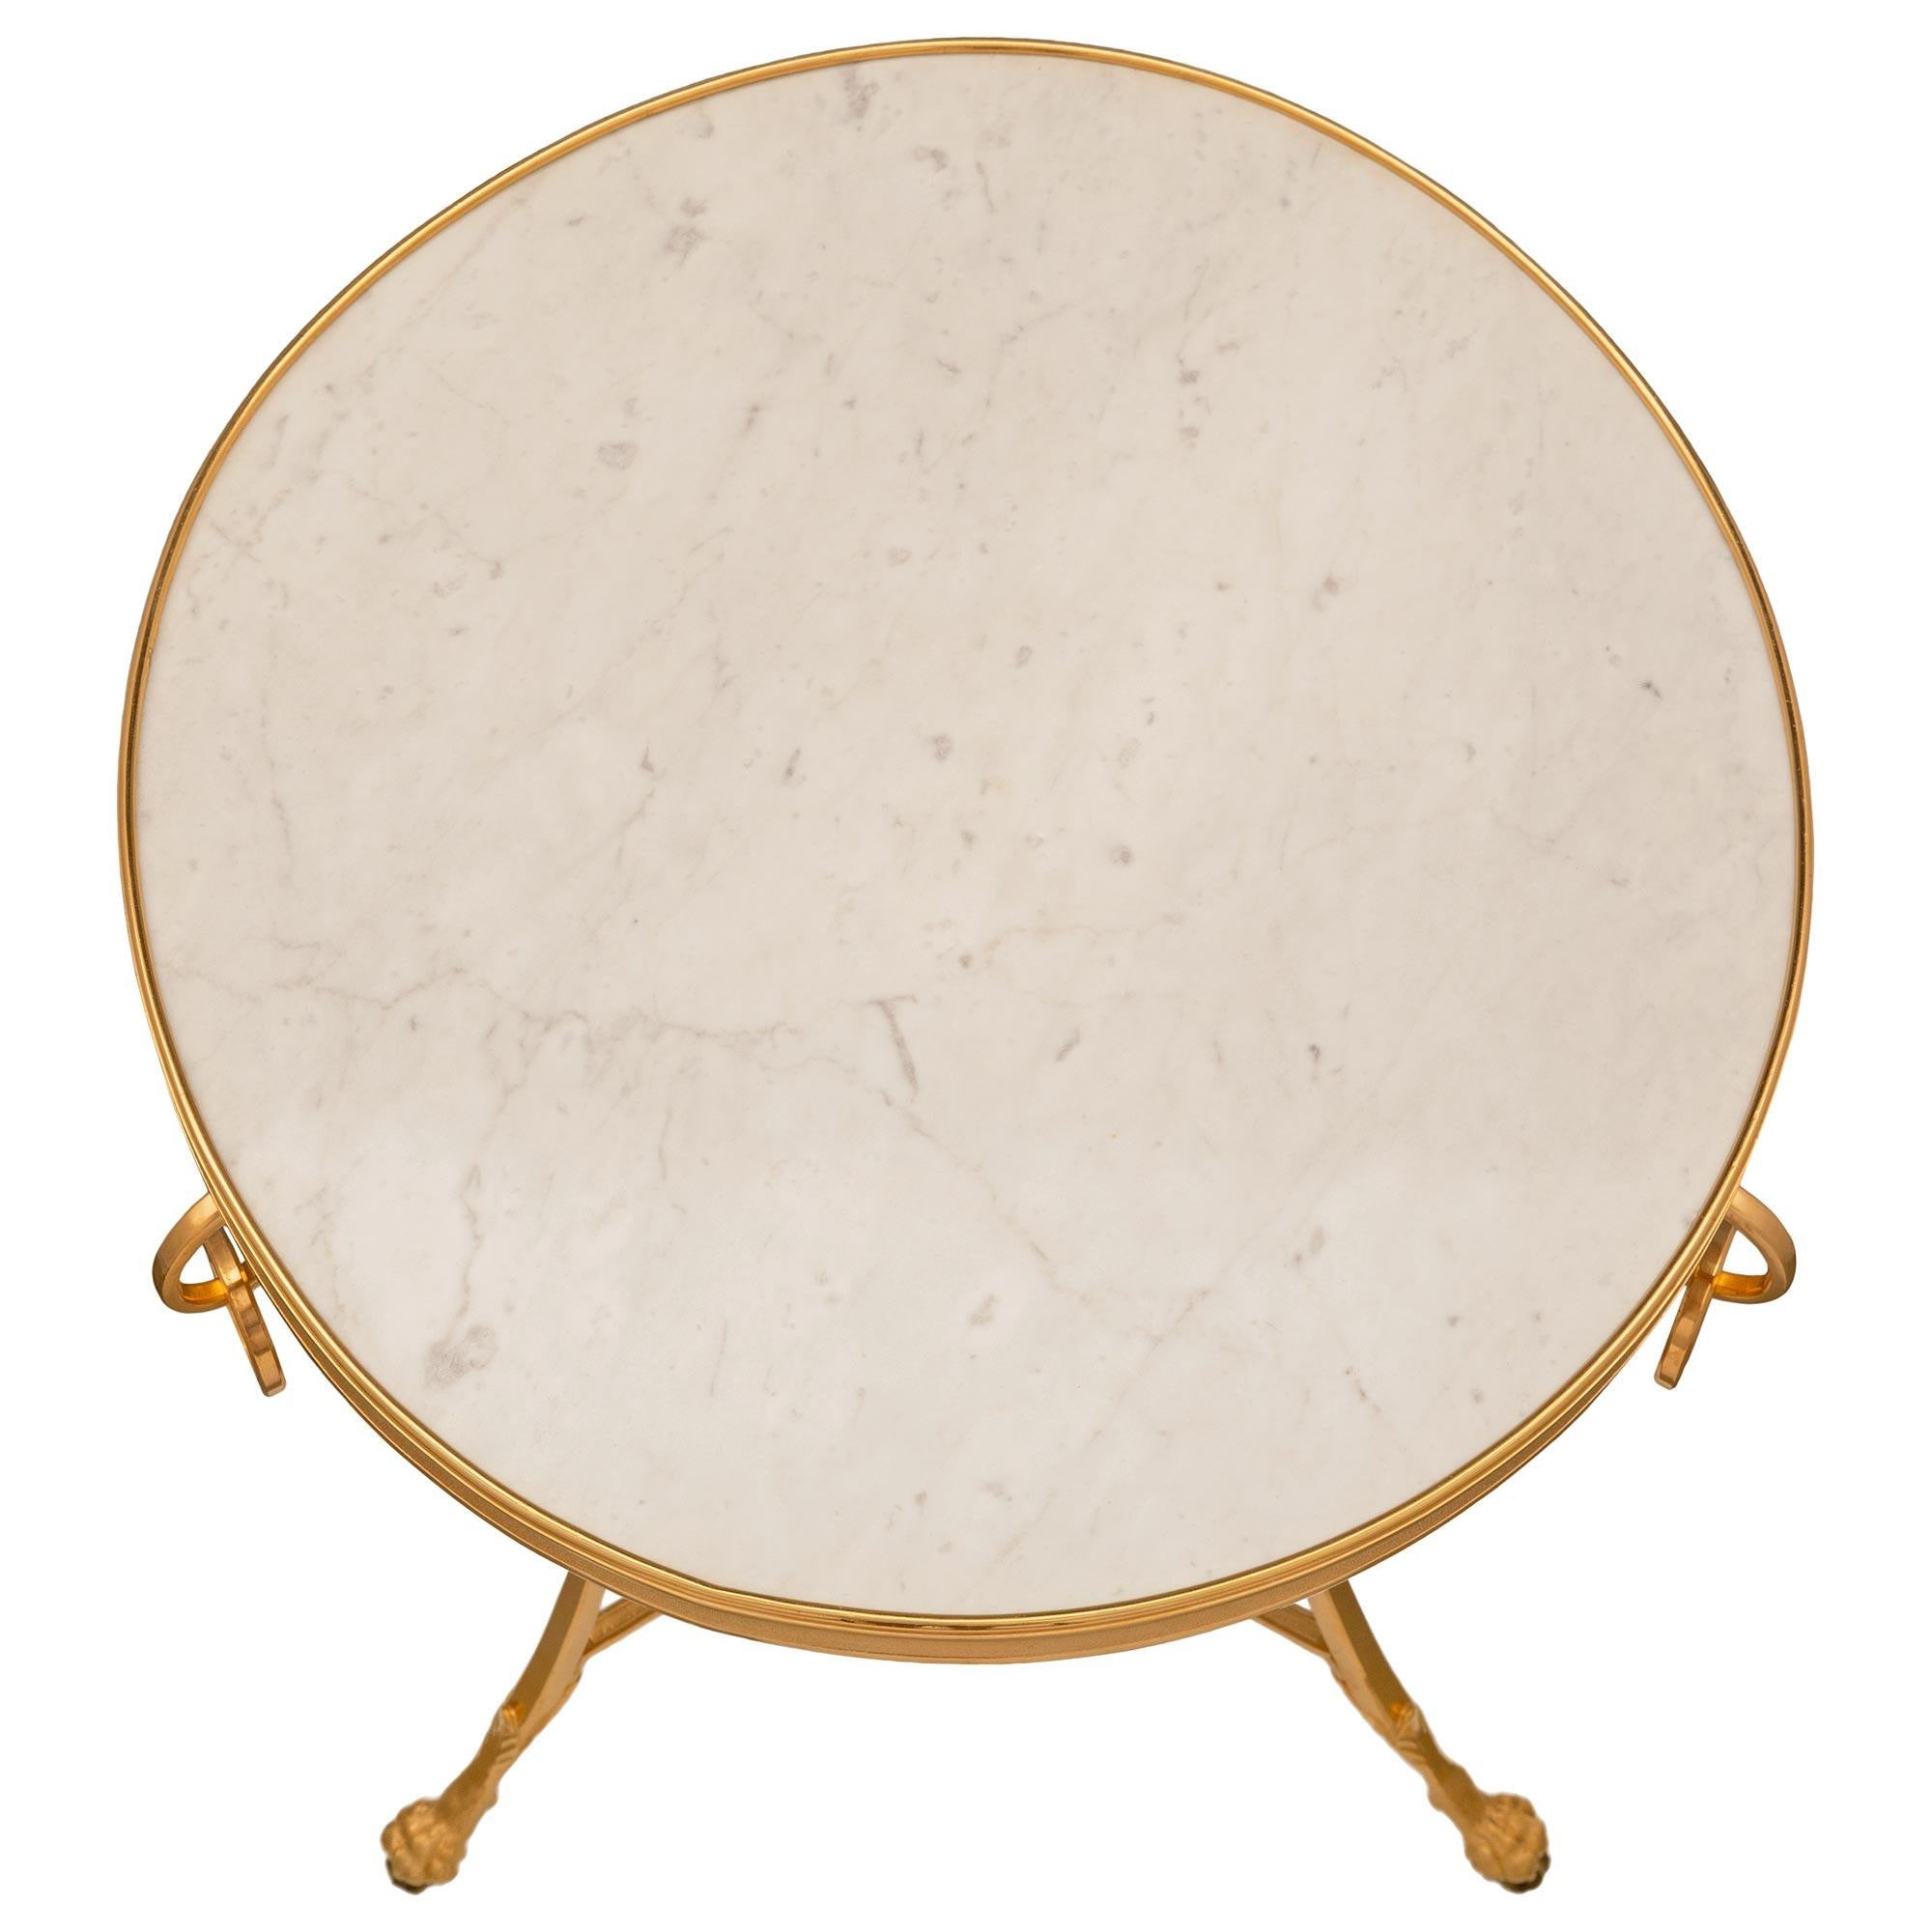 Ein eleganter und äußerst dekorativer französischer Beistelltisch aus Ormolu und weißem Carrara-Marmor aus dem 19. Jahrhundert. Der Tisch steht auf drei schönen, leicht geschwungenen Beinen mit reich ziselierten Tatzenfüßen, die mit feinen